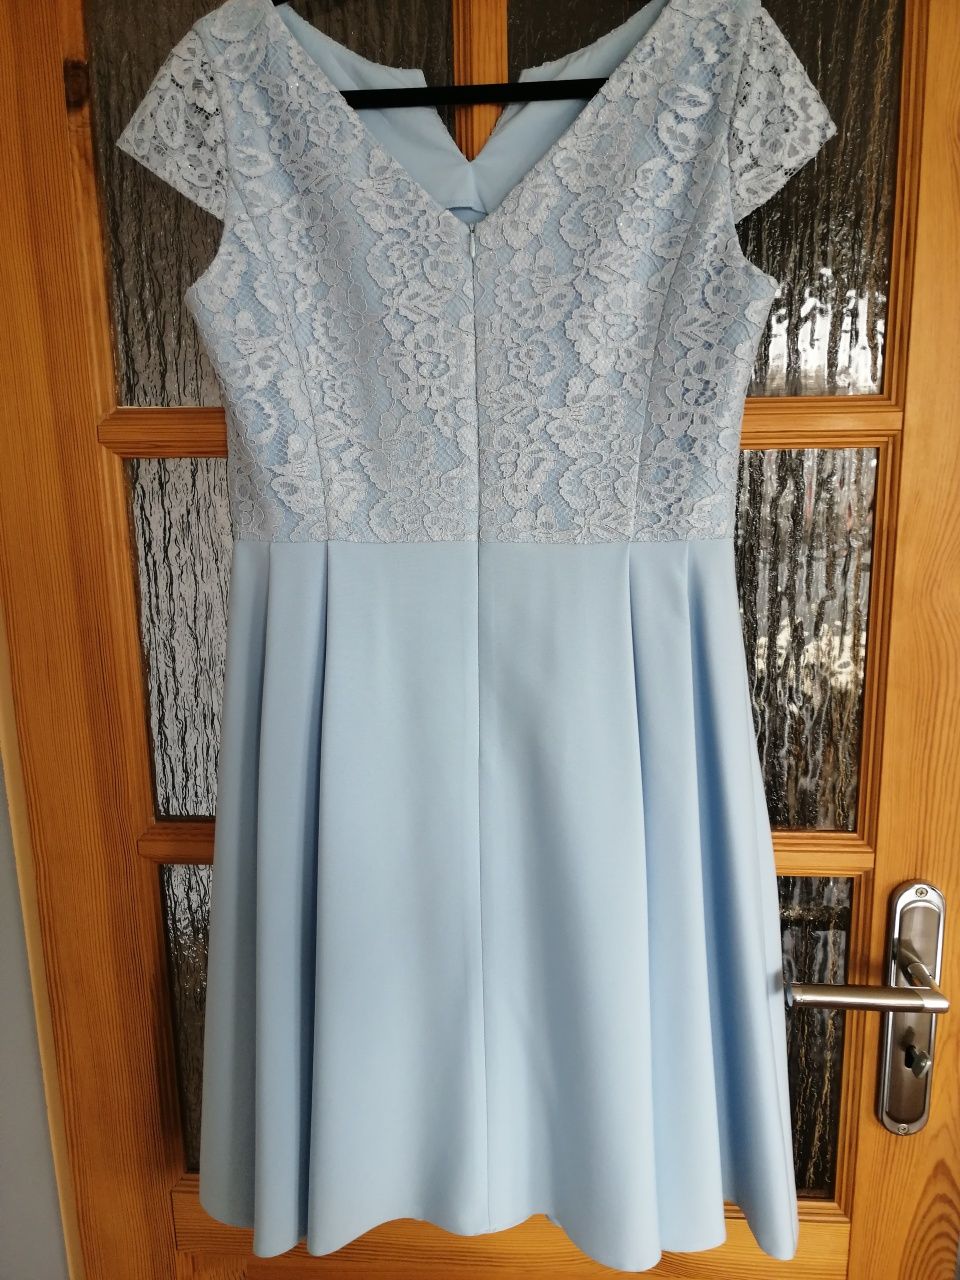 Błękitna elegancka sukienka XL 42 Komunia, wesele, chrzciny